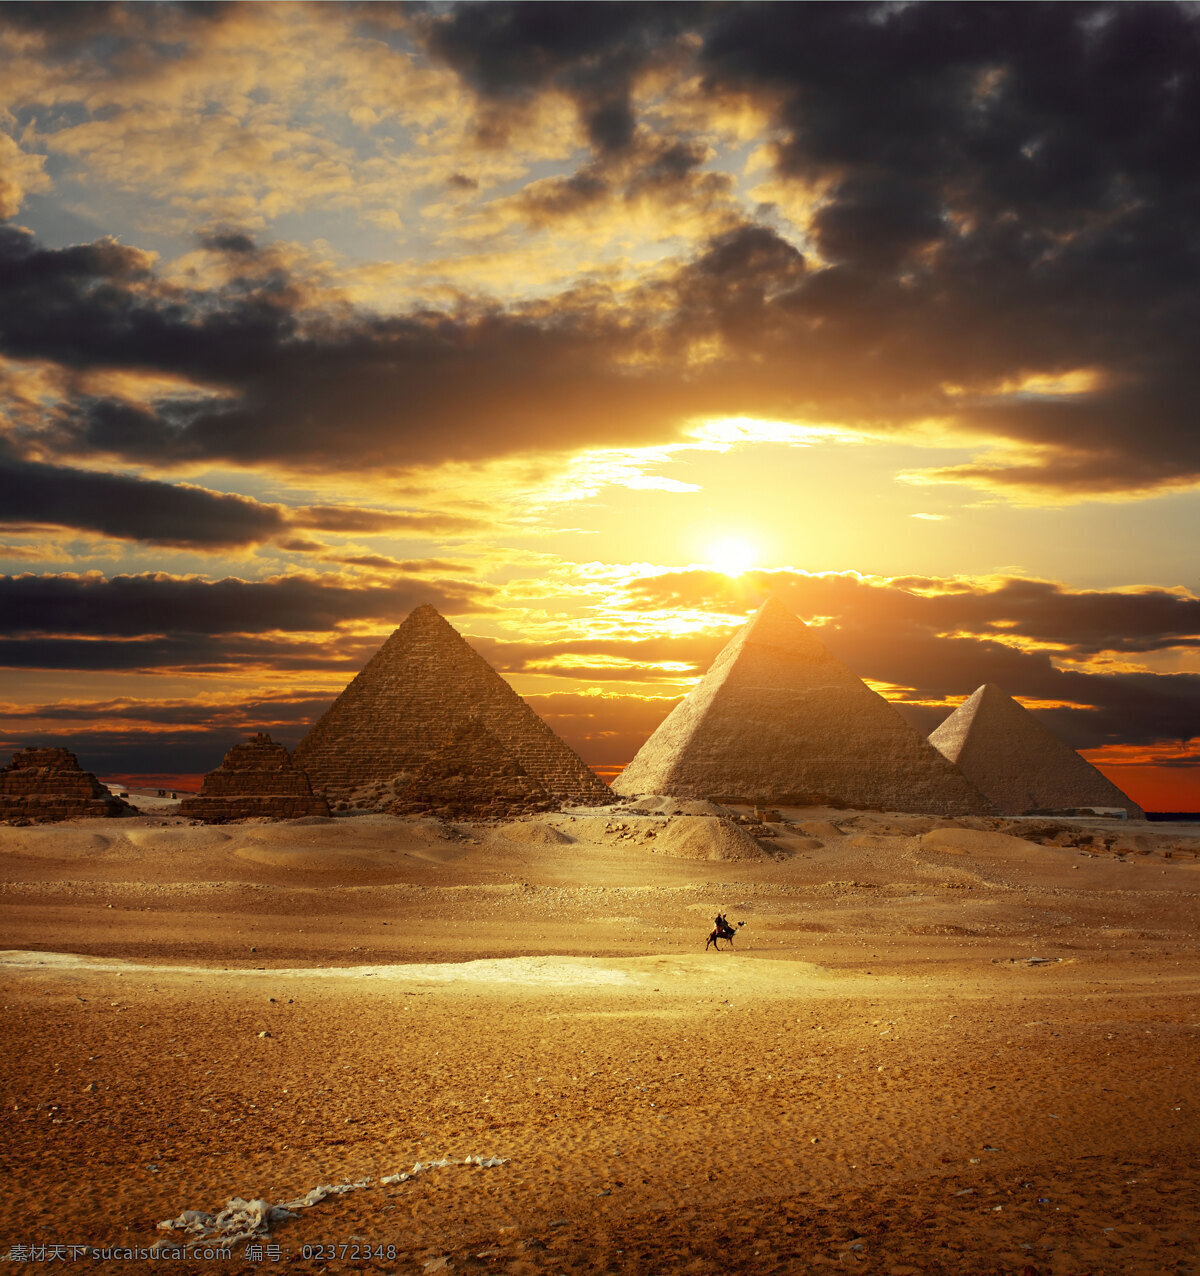 沙漠风情 沙漠 金字塔 天空 夕阳 云朵 多娇江山 自然景观 自然风景